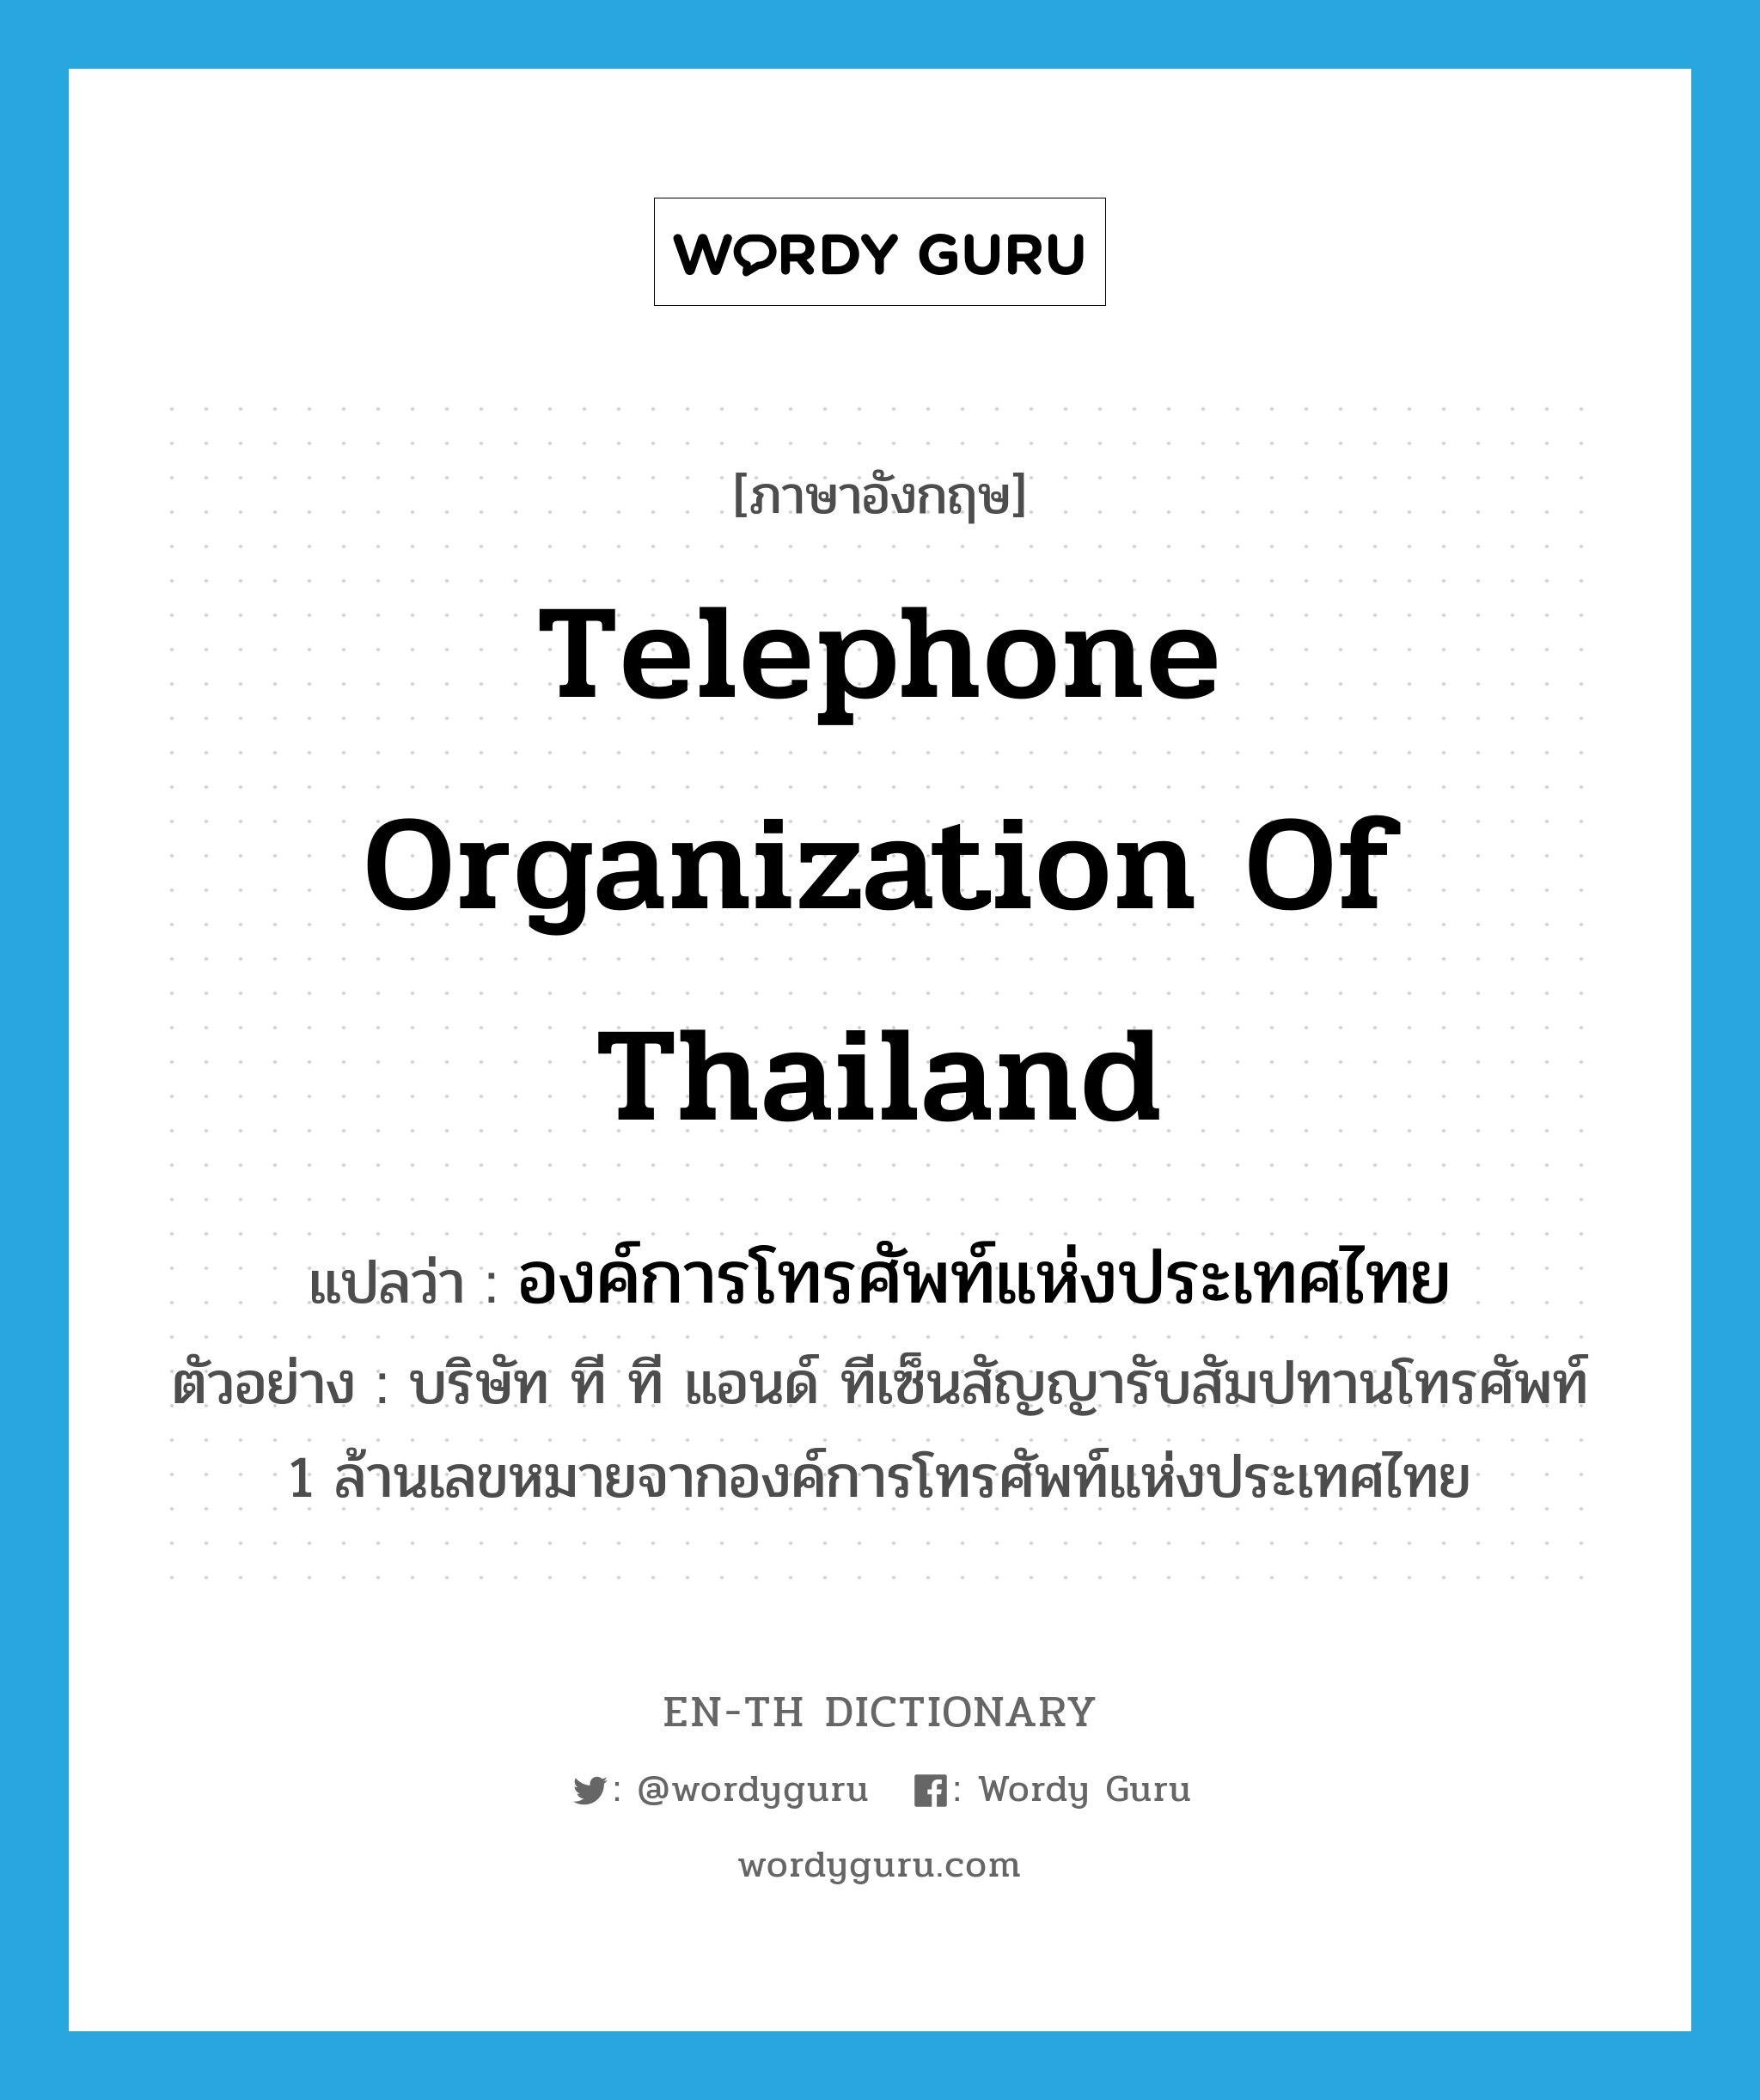 องค์การโทรศัพท์แห่งประเทศไทย ภาษาอังกฤษ?, คำศัพท์ภาษาอังกฤษ องค์การโทรศัพท์แห่งประเทศไทย แปลว่า Telephone Organization of Thailand ประเภท N ตัวอย่าง บริษัท ที ที แอนด์ ทีเซ็นสัญญารับสัมปทานโทรศัพท์ 1 ล้านเลขหมายจากองค์การโทรศัพท์แห่งประเทศไทย หมวด N